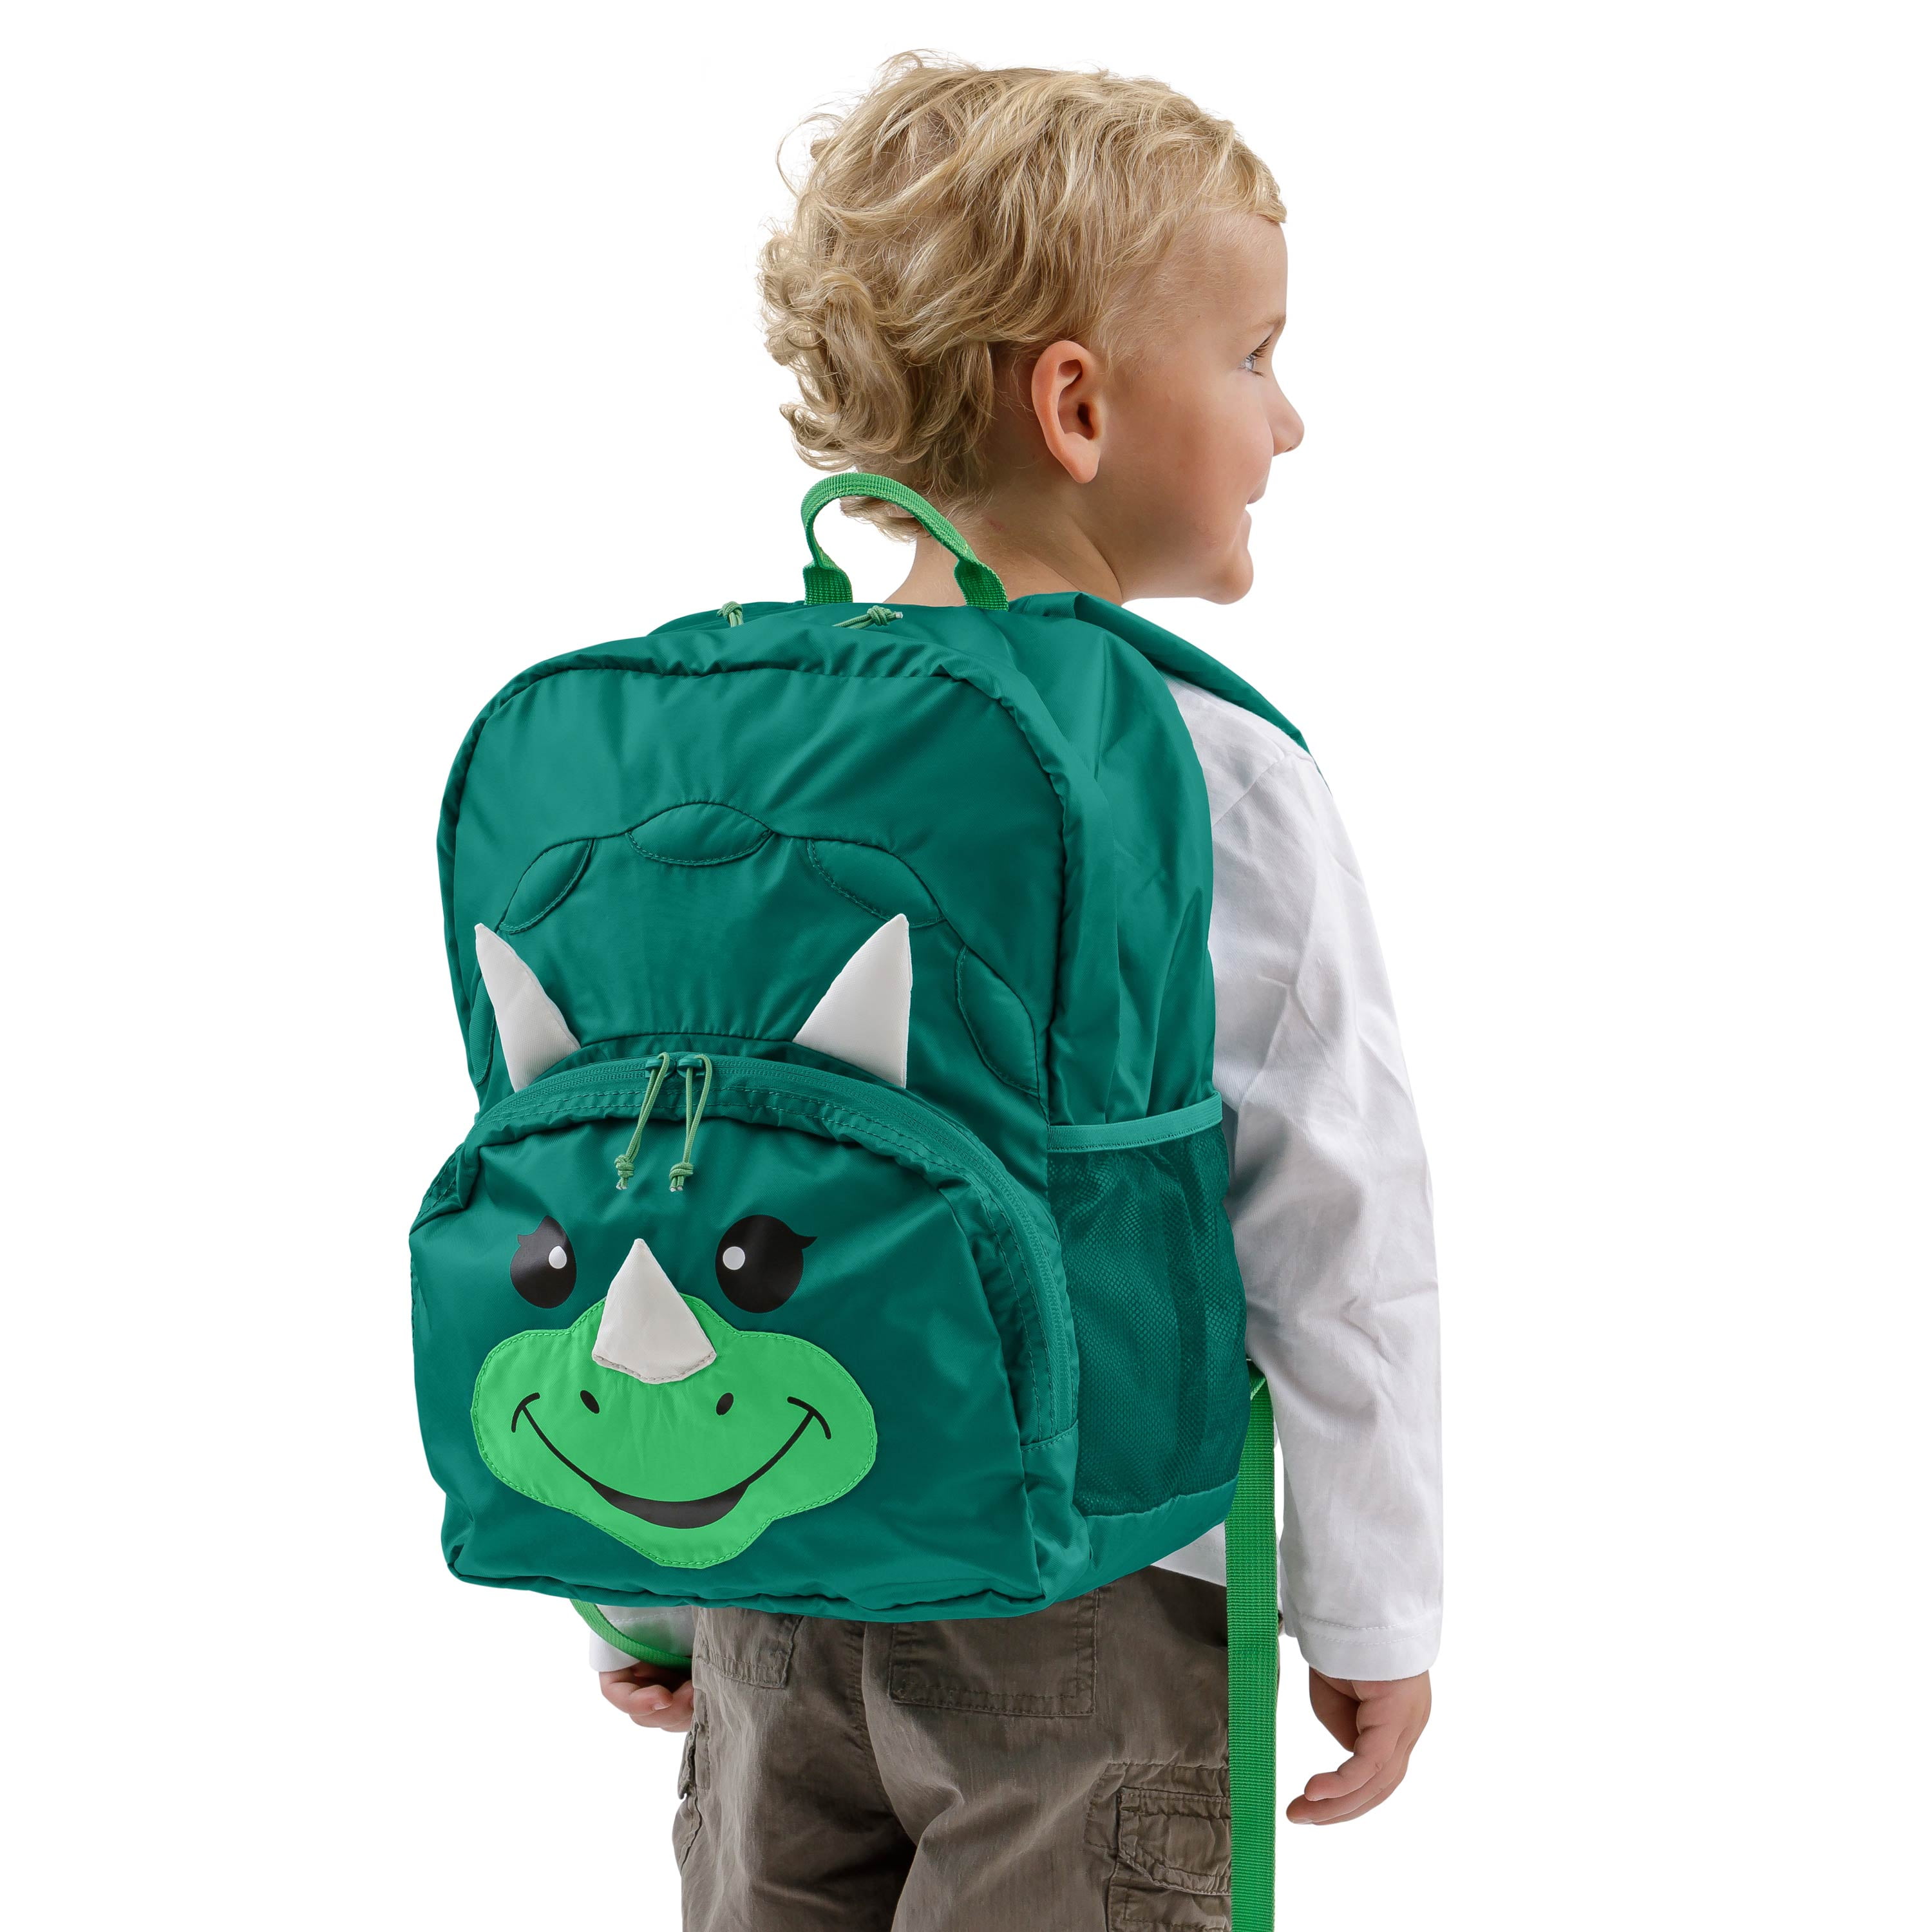 Kids Backpack – Dinosaur